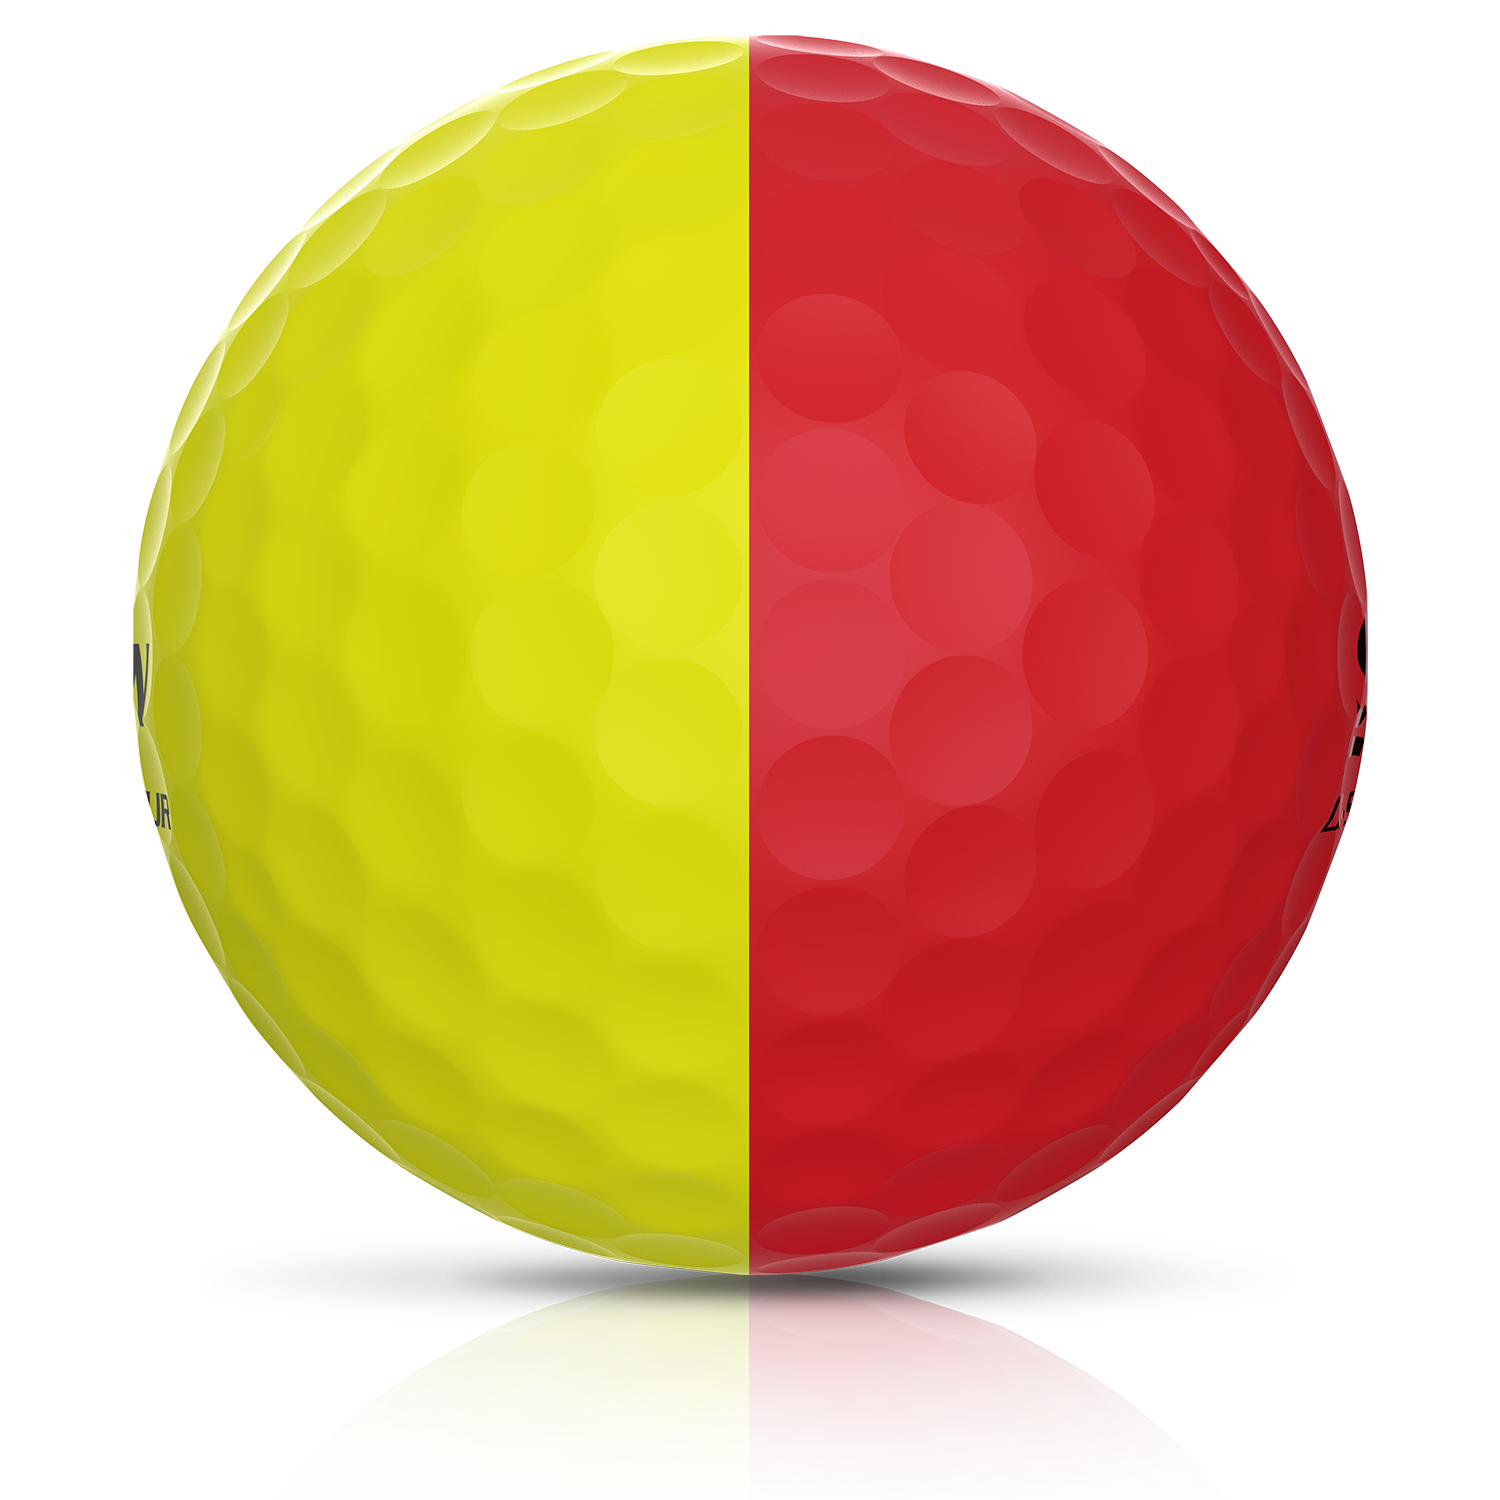 Q-Star Tour Divide Red/Yellow Golf Balls